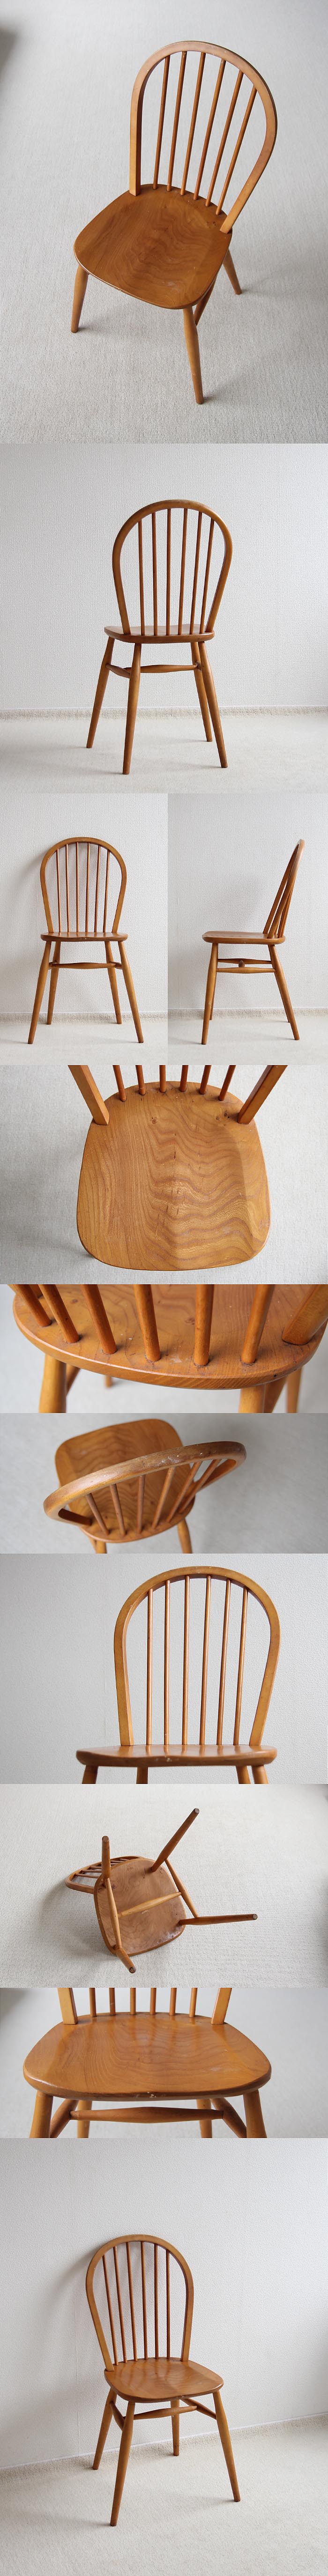 イギリス ヴィンテージ キッチンチェア 英国 木製椅子 家具「フープバックチェア」V-407